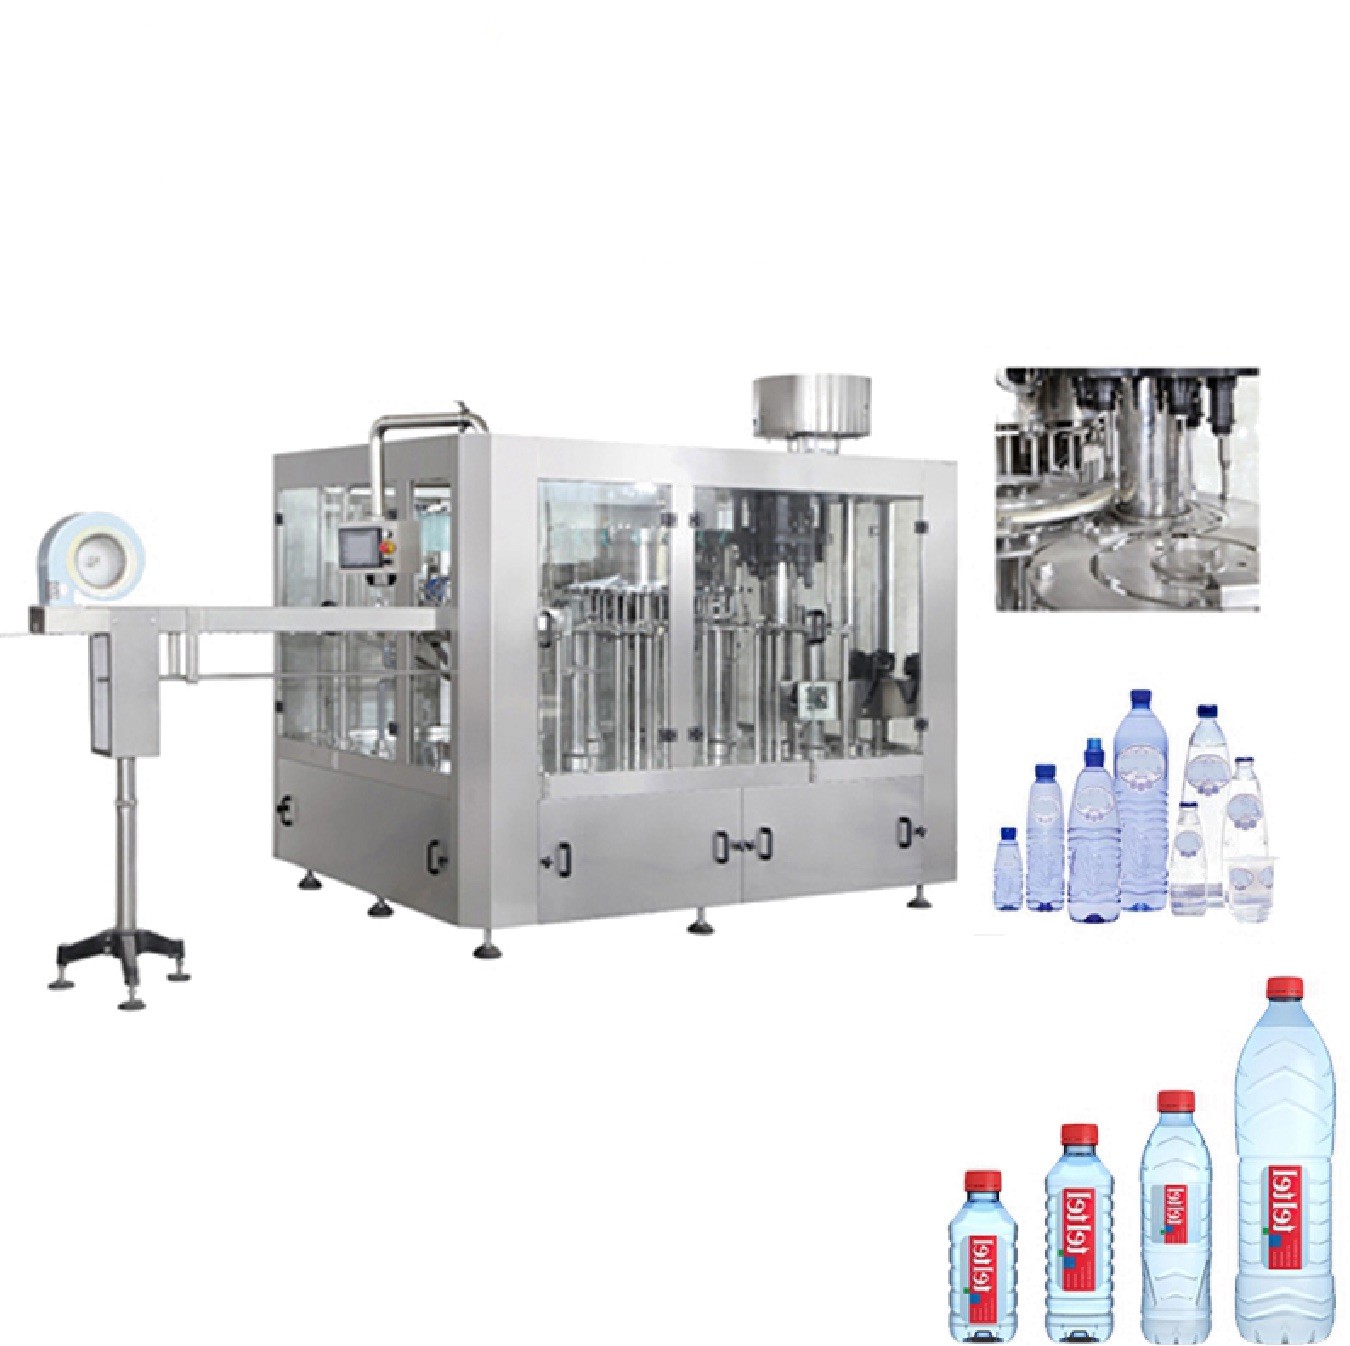 e-liquid filling machines, e-juice fillers, e-liquid filling  - filamatic